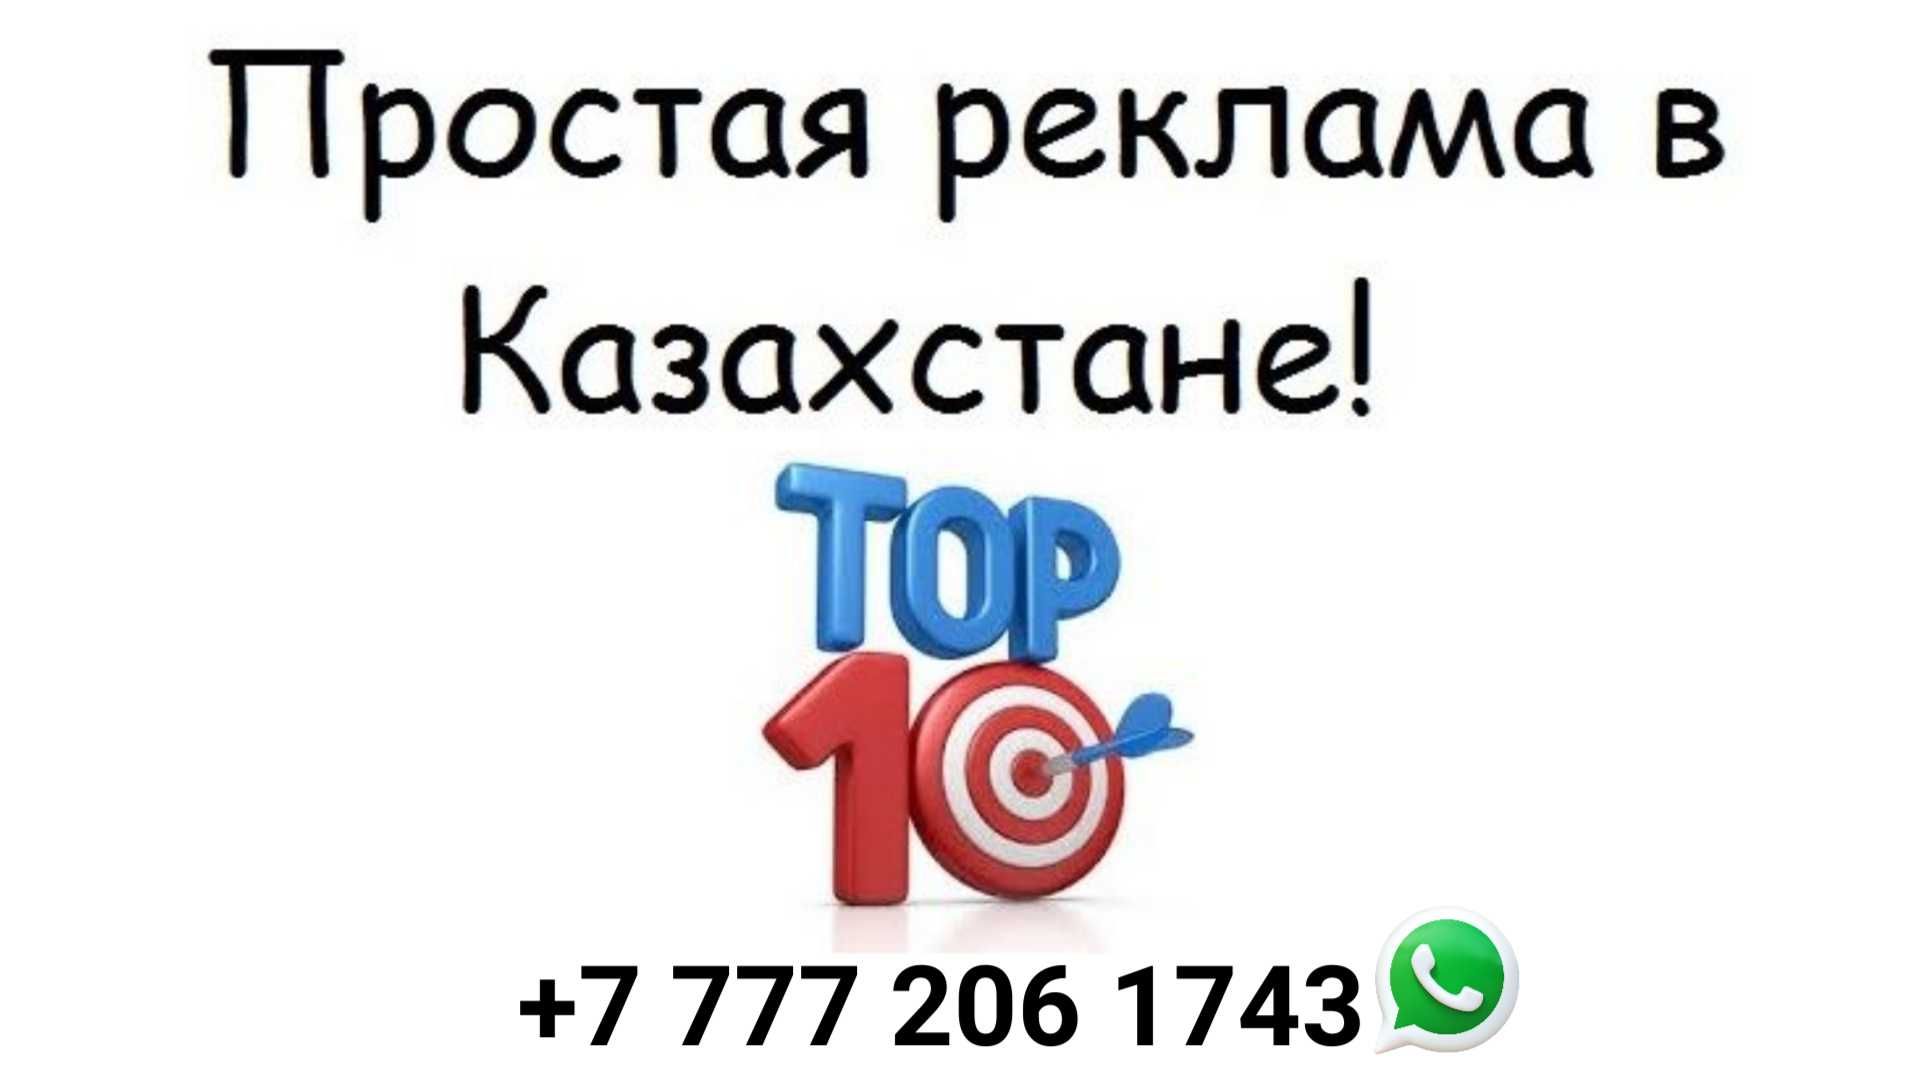 Реклама за 110 на 65 сайтах Казахстана в сутки ️ ️